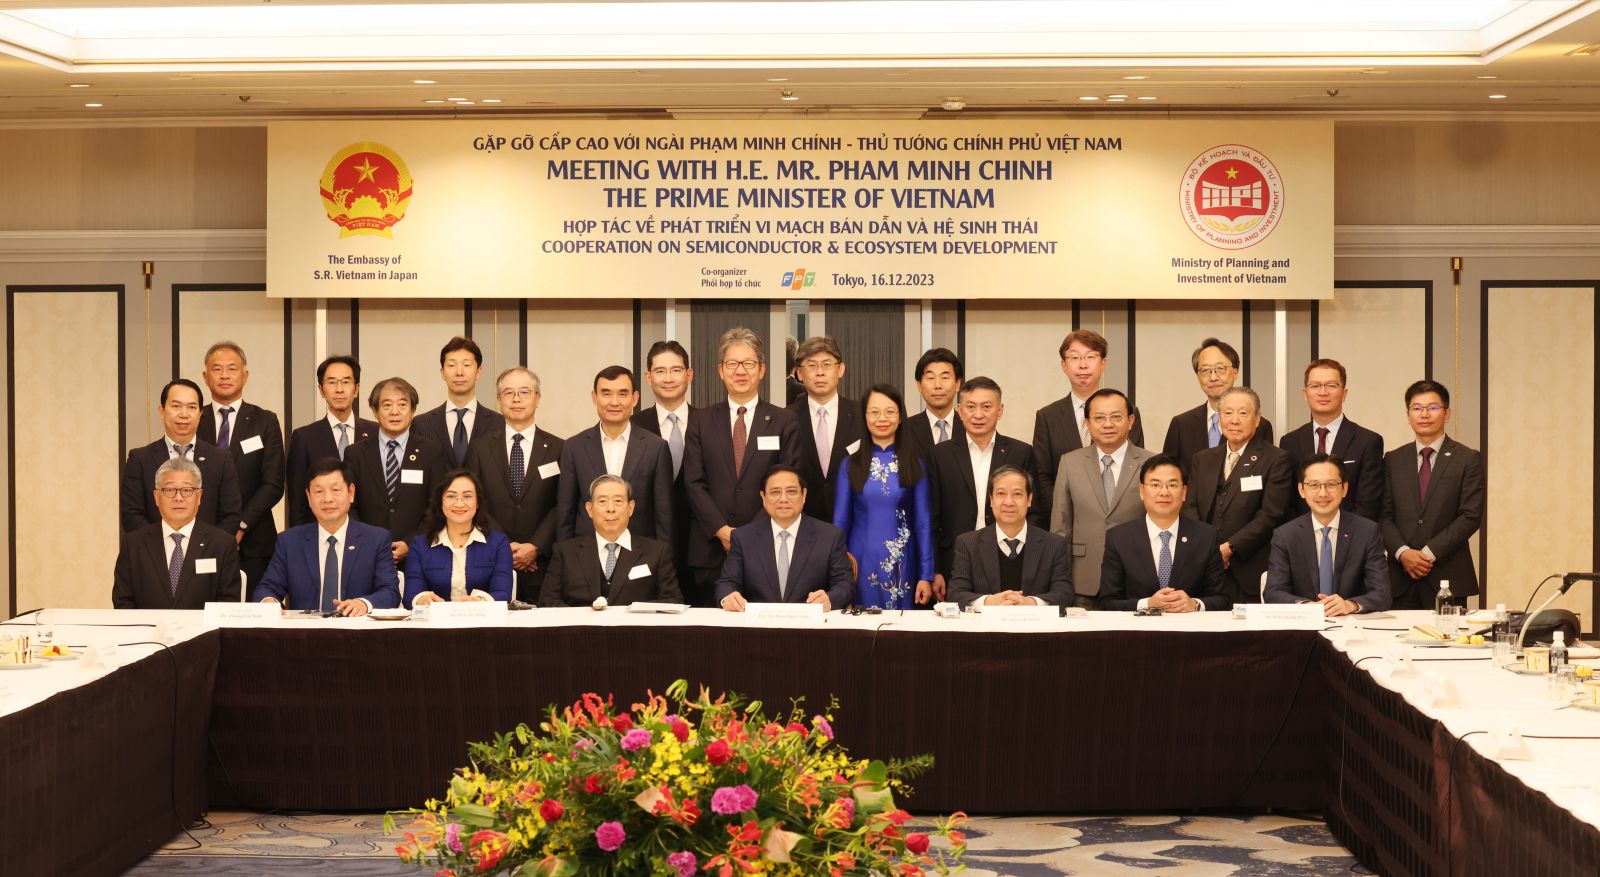 Thủ tướng Phạm Minh Chính trong buổi ăn sáng và làm việc với đại diện 10 tập đoàn hàng đầu về vi mạch và chíp bán dẫn của Nhật Bản.jpg